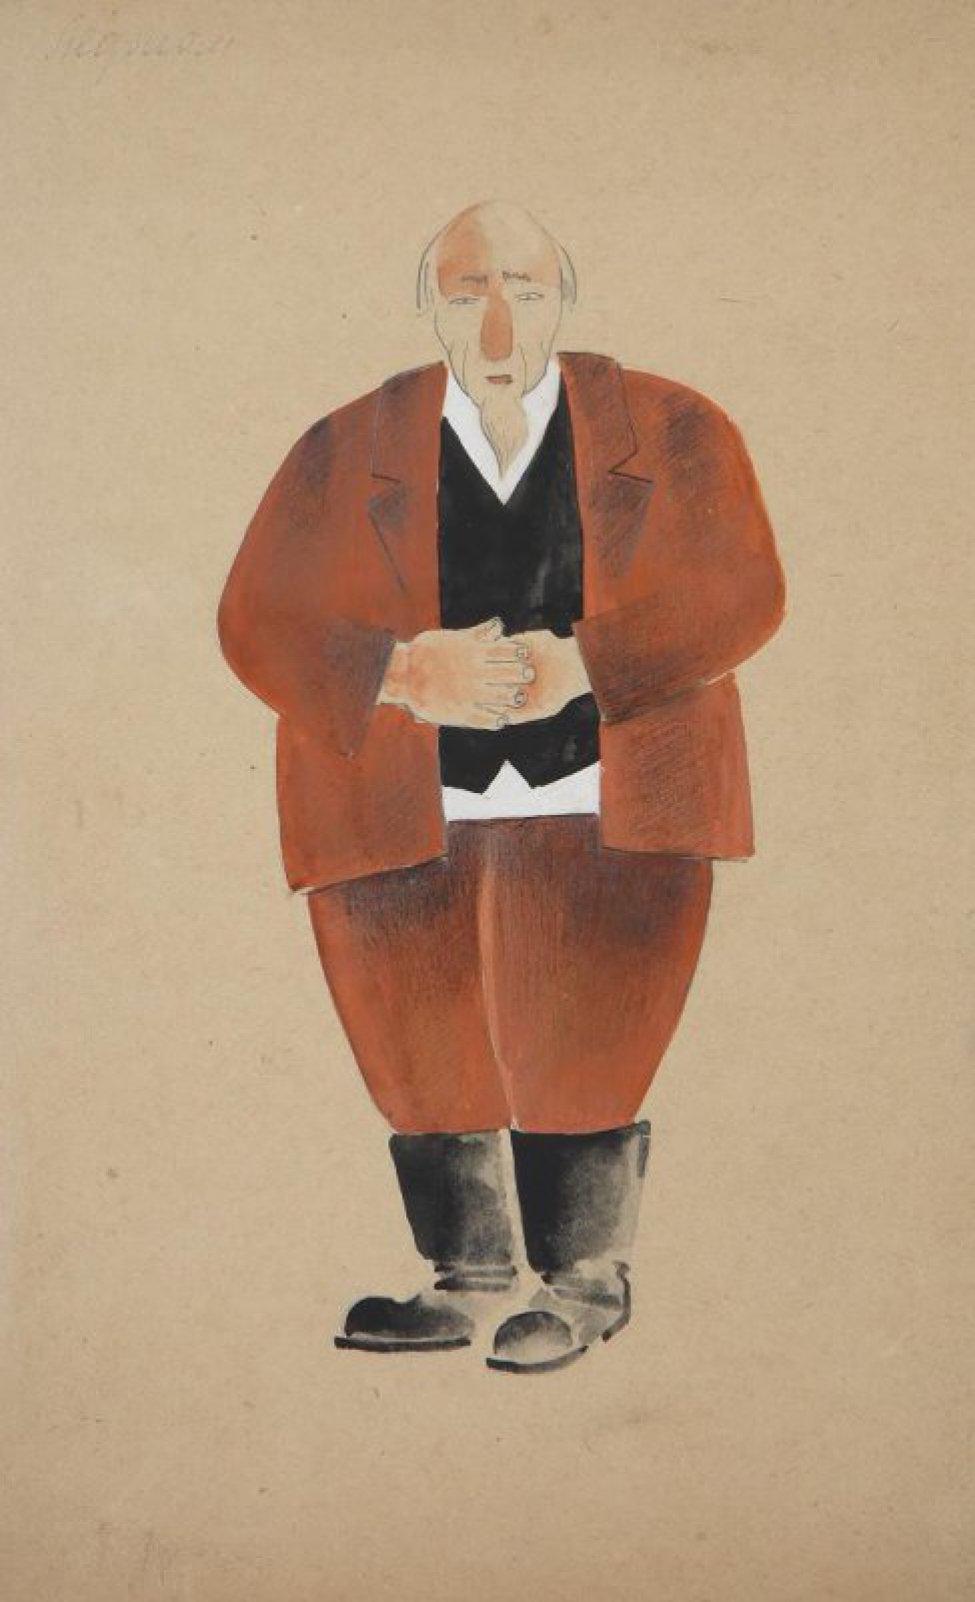 Изображен в рост, анфас лысый седобородый мужчина в коричневом костюме с белой рубашкой и черным жилетом, в сапогах, стоящий сложив руки на животе.